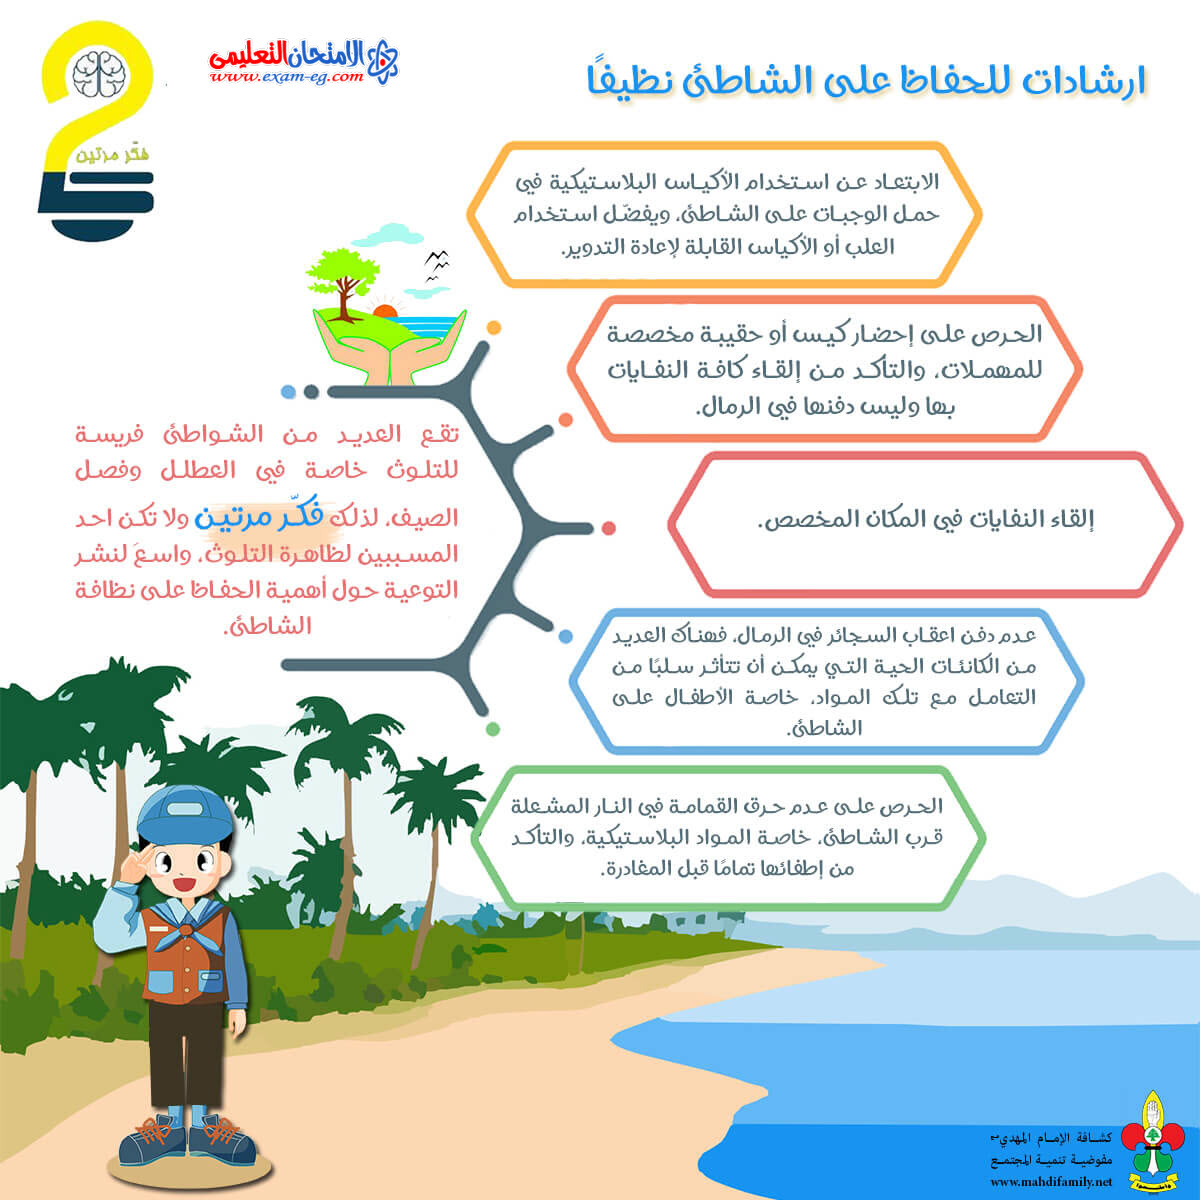 كتابة لوحة إرشادية باللغة العربية وأحد اللغات الأجنبية تتضمن مقترحات للحفاظ على البيئة